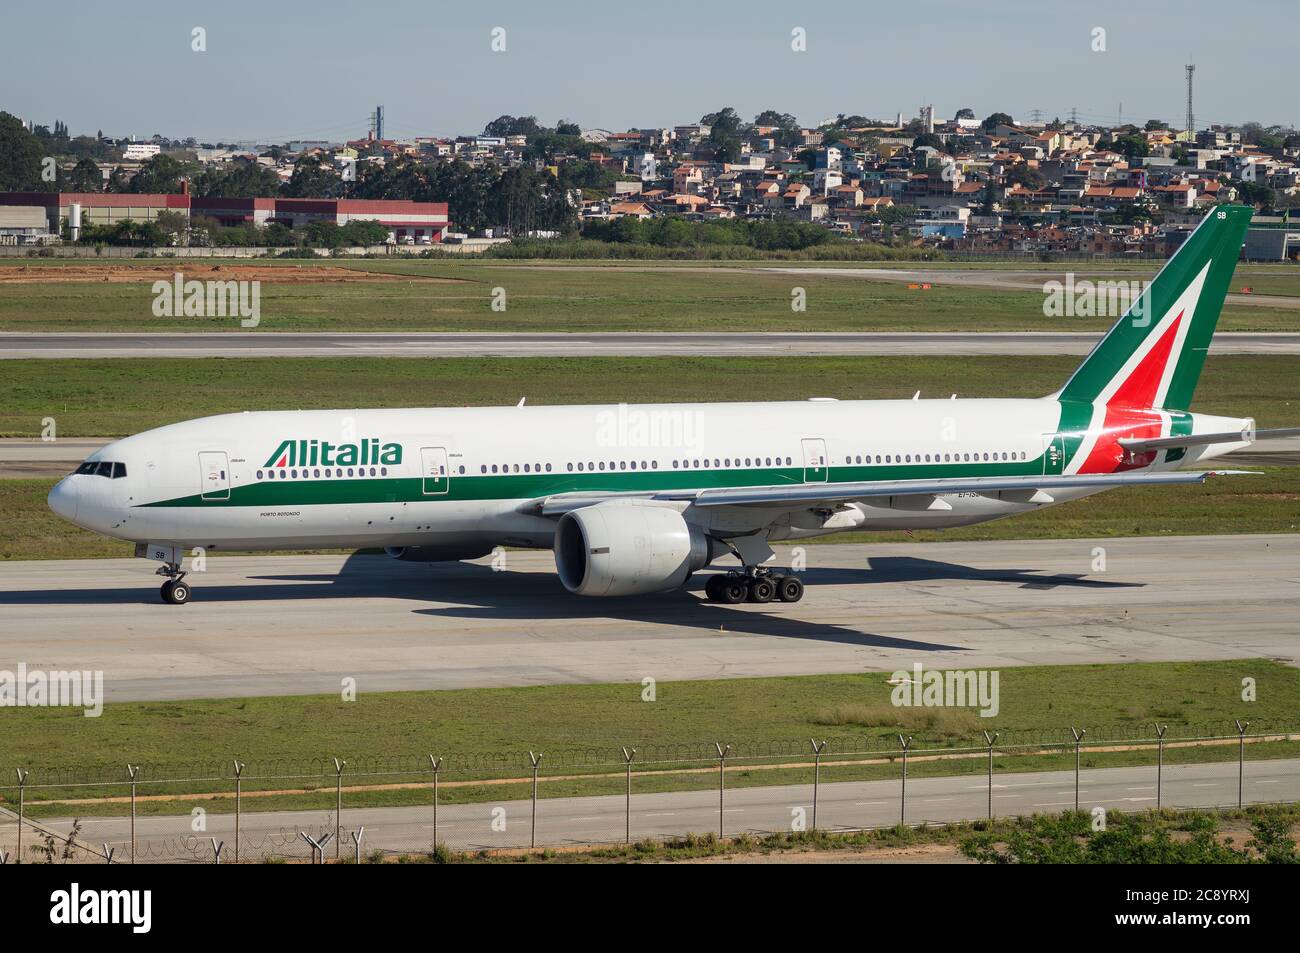 Boeing 777-243ER de Alitalia (EI-ISB - denominado "Porto Rotondo" - aviones de fuselaje aéreo), que cobra rumbo a la pista 27R del aeropuerto internacional de Sao Paulo/Guarulhos. Foto de stock